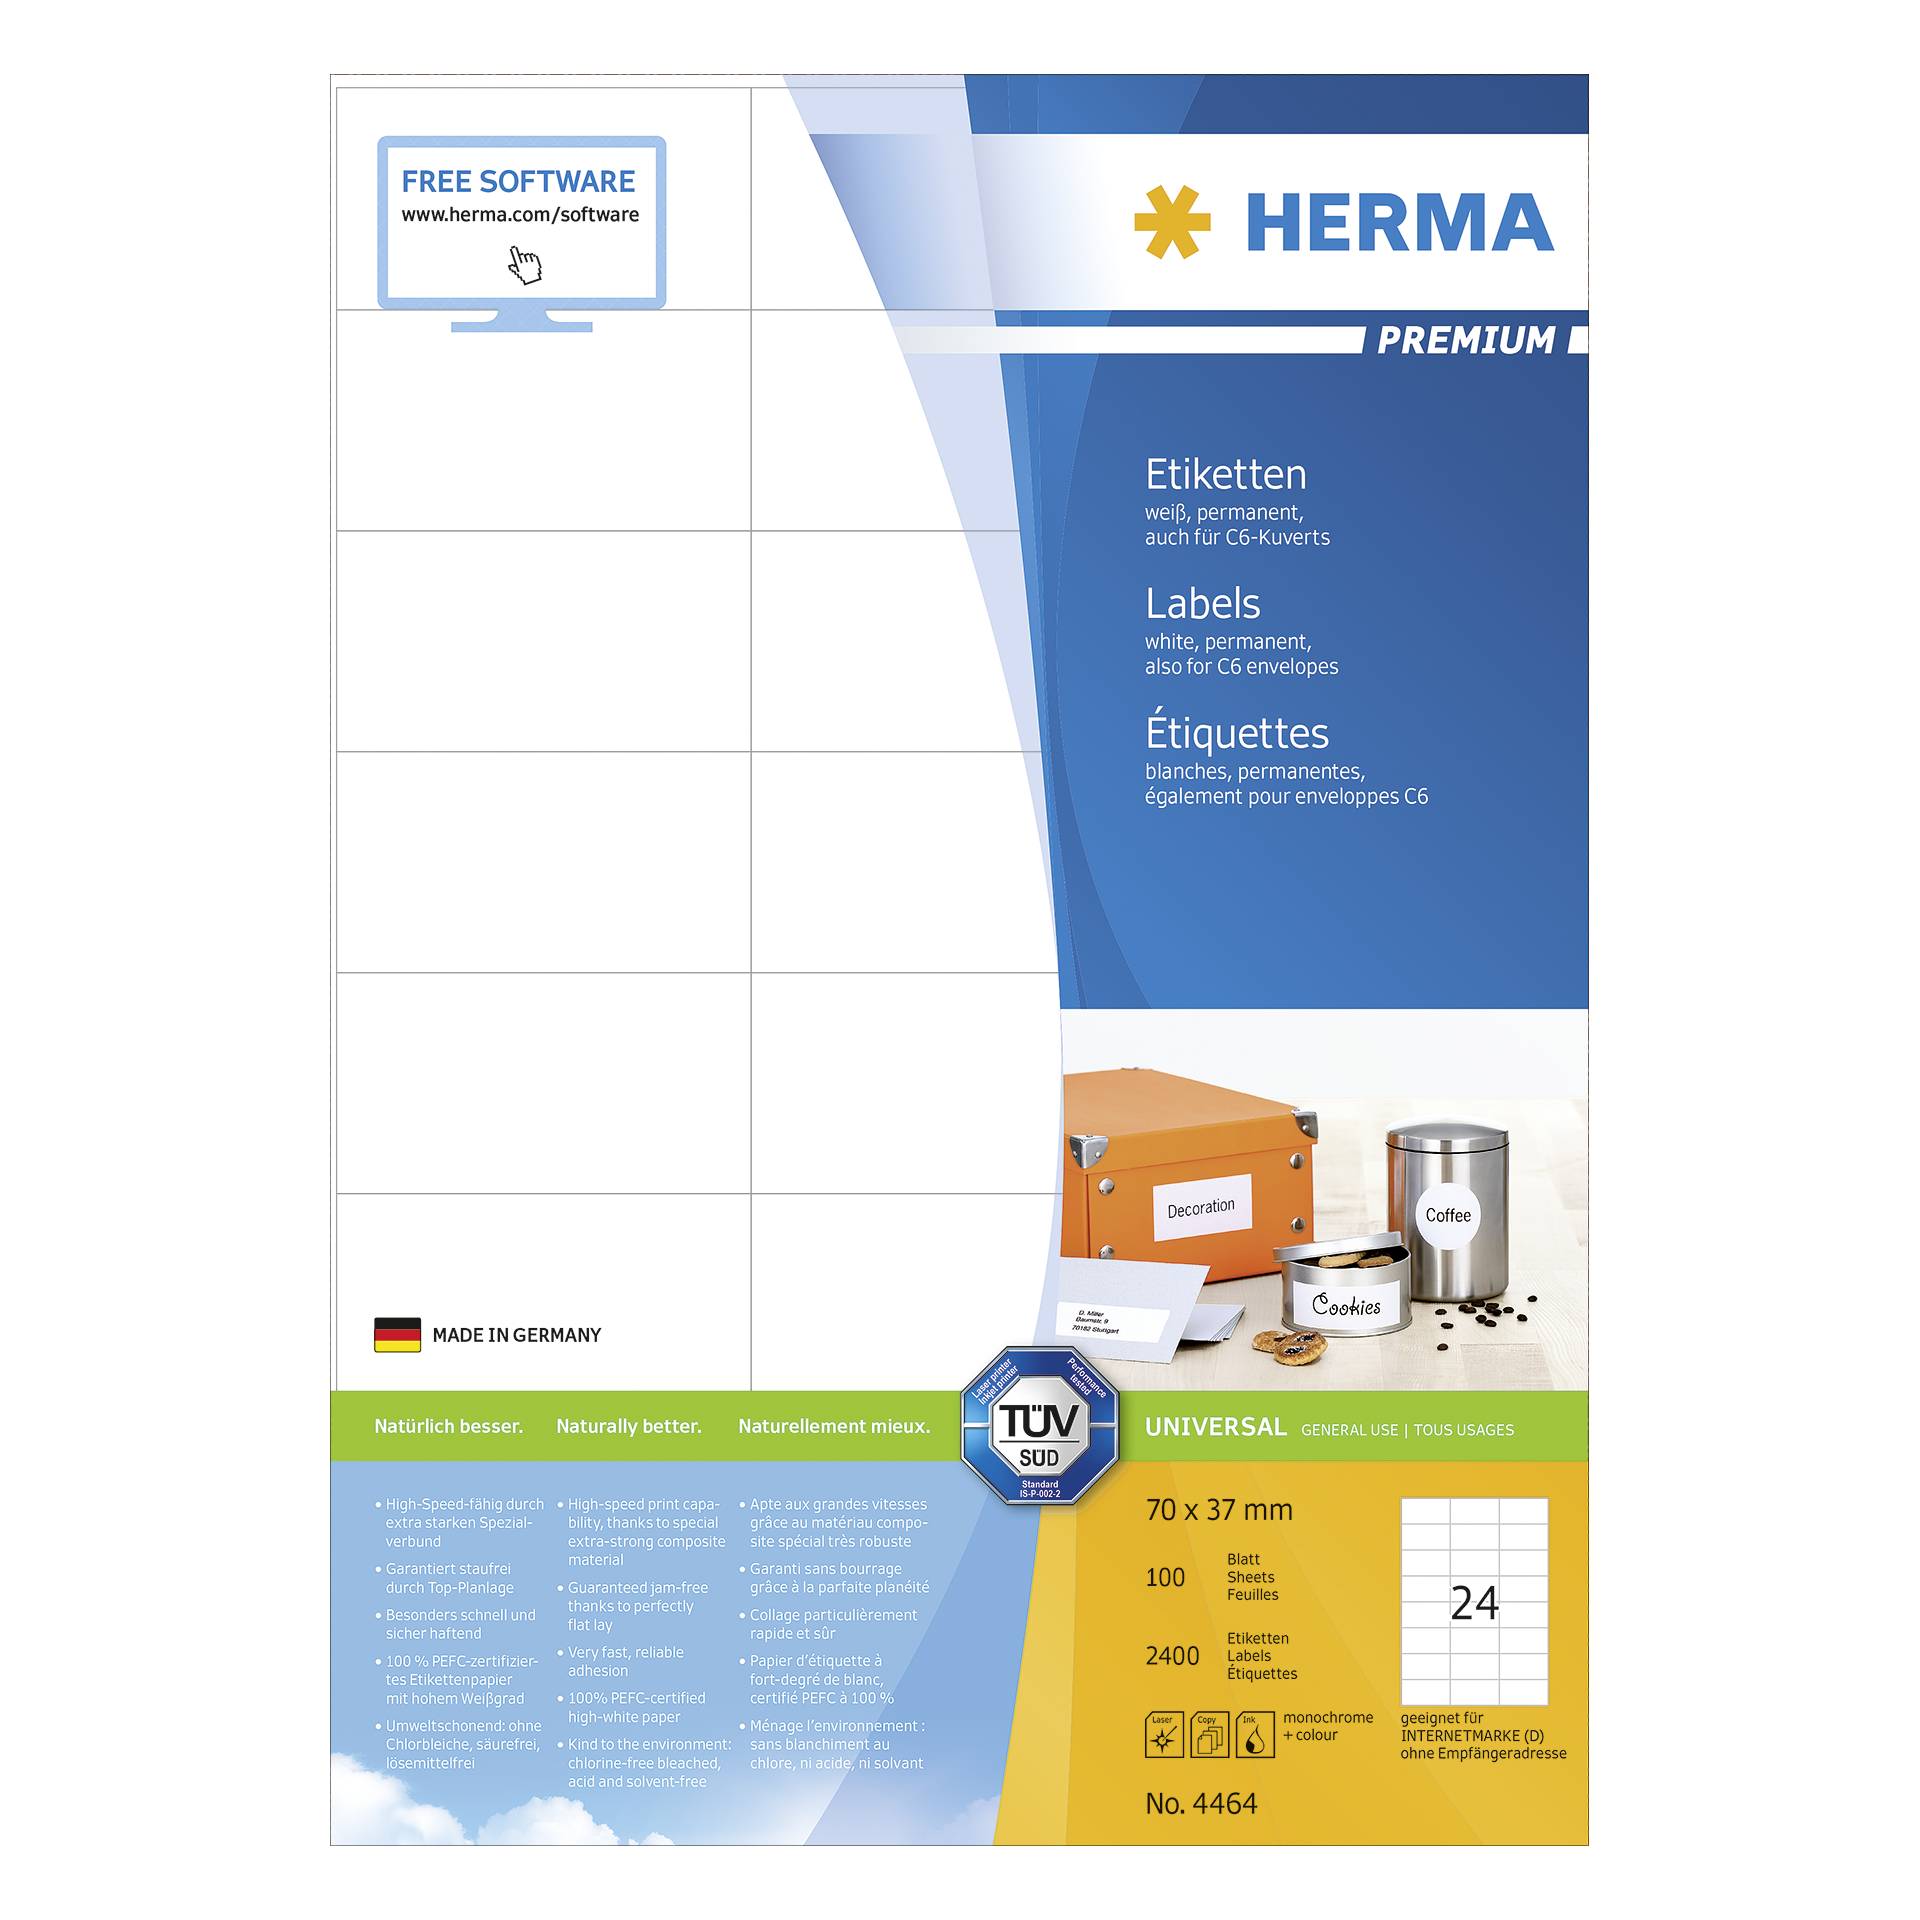 Herma Prem. etichette bian.70x37 100 fogli DIN A4 2400 pezzi